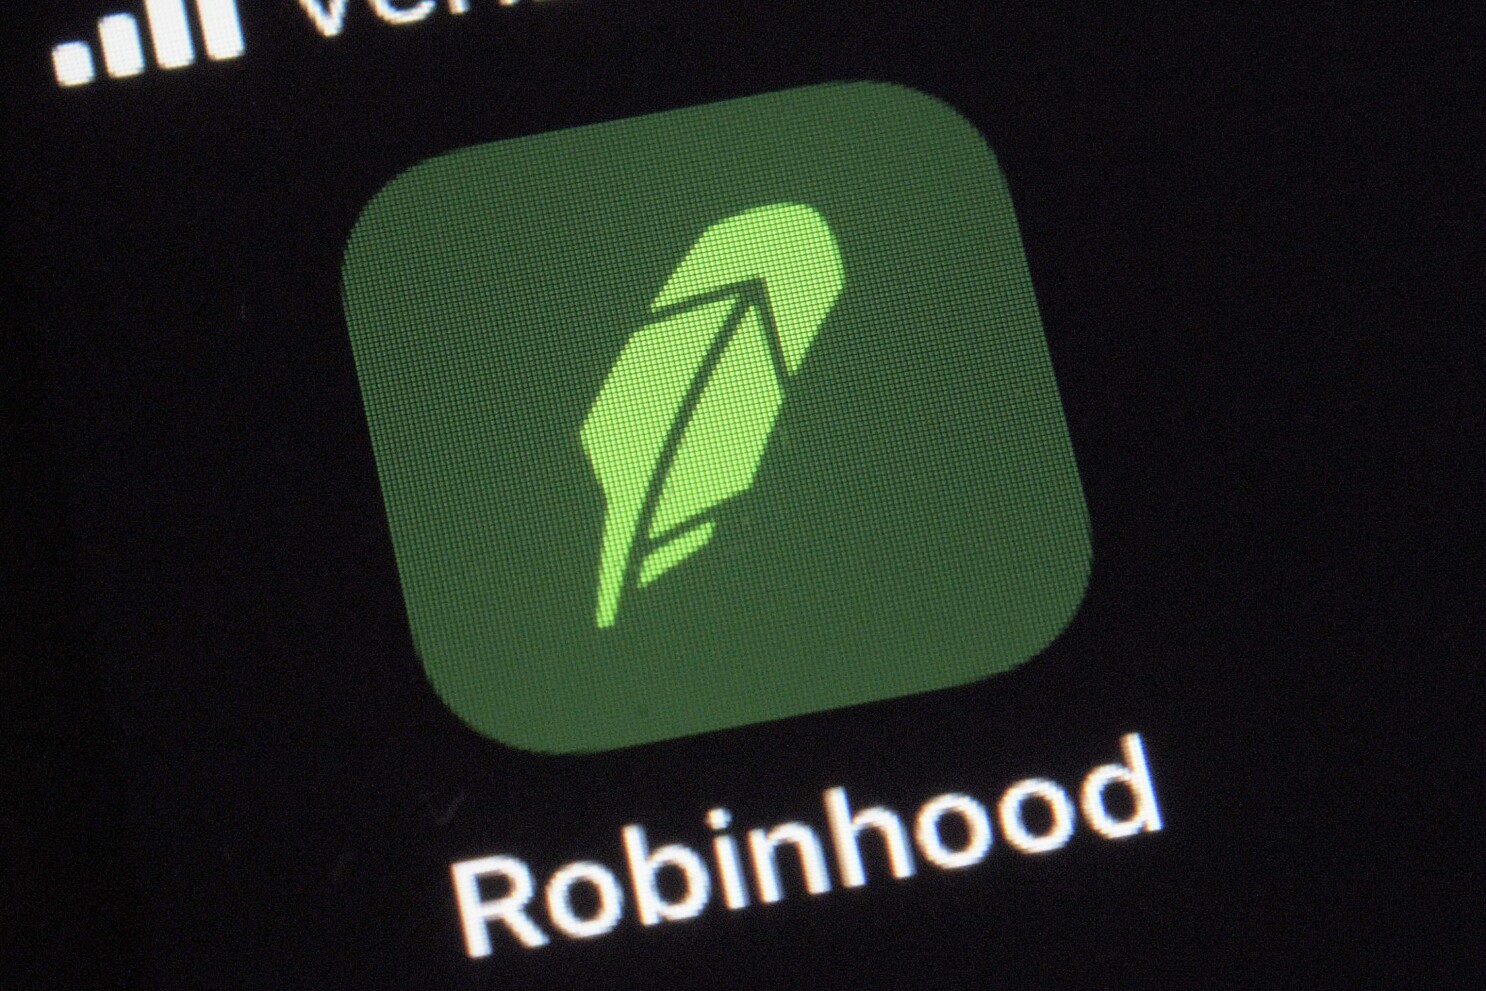 robinhood app contact